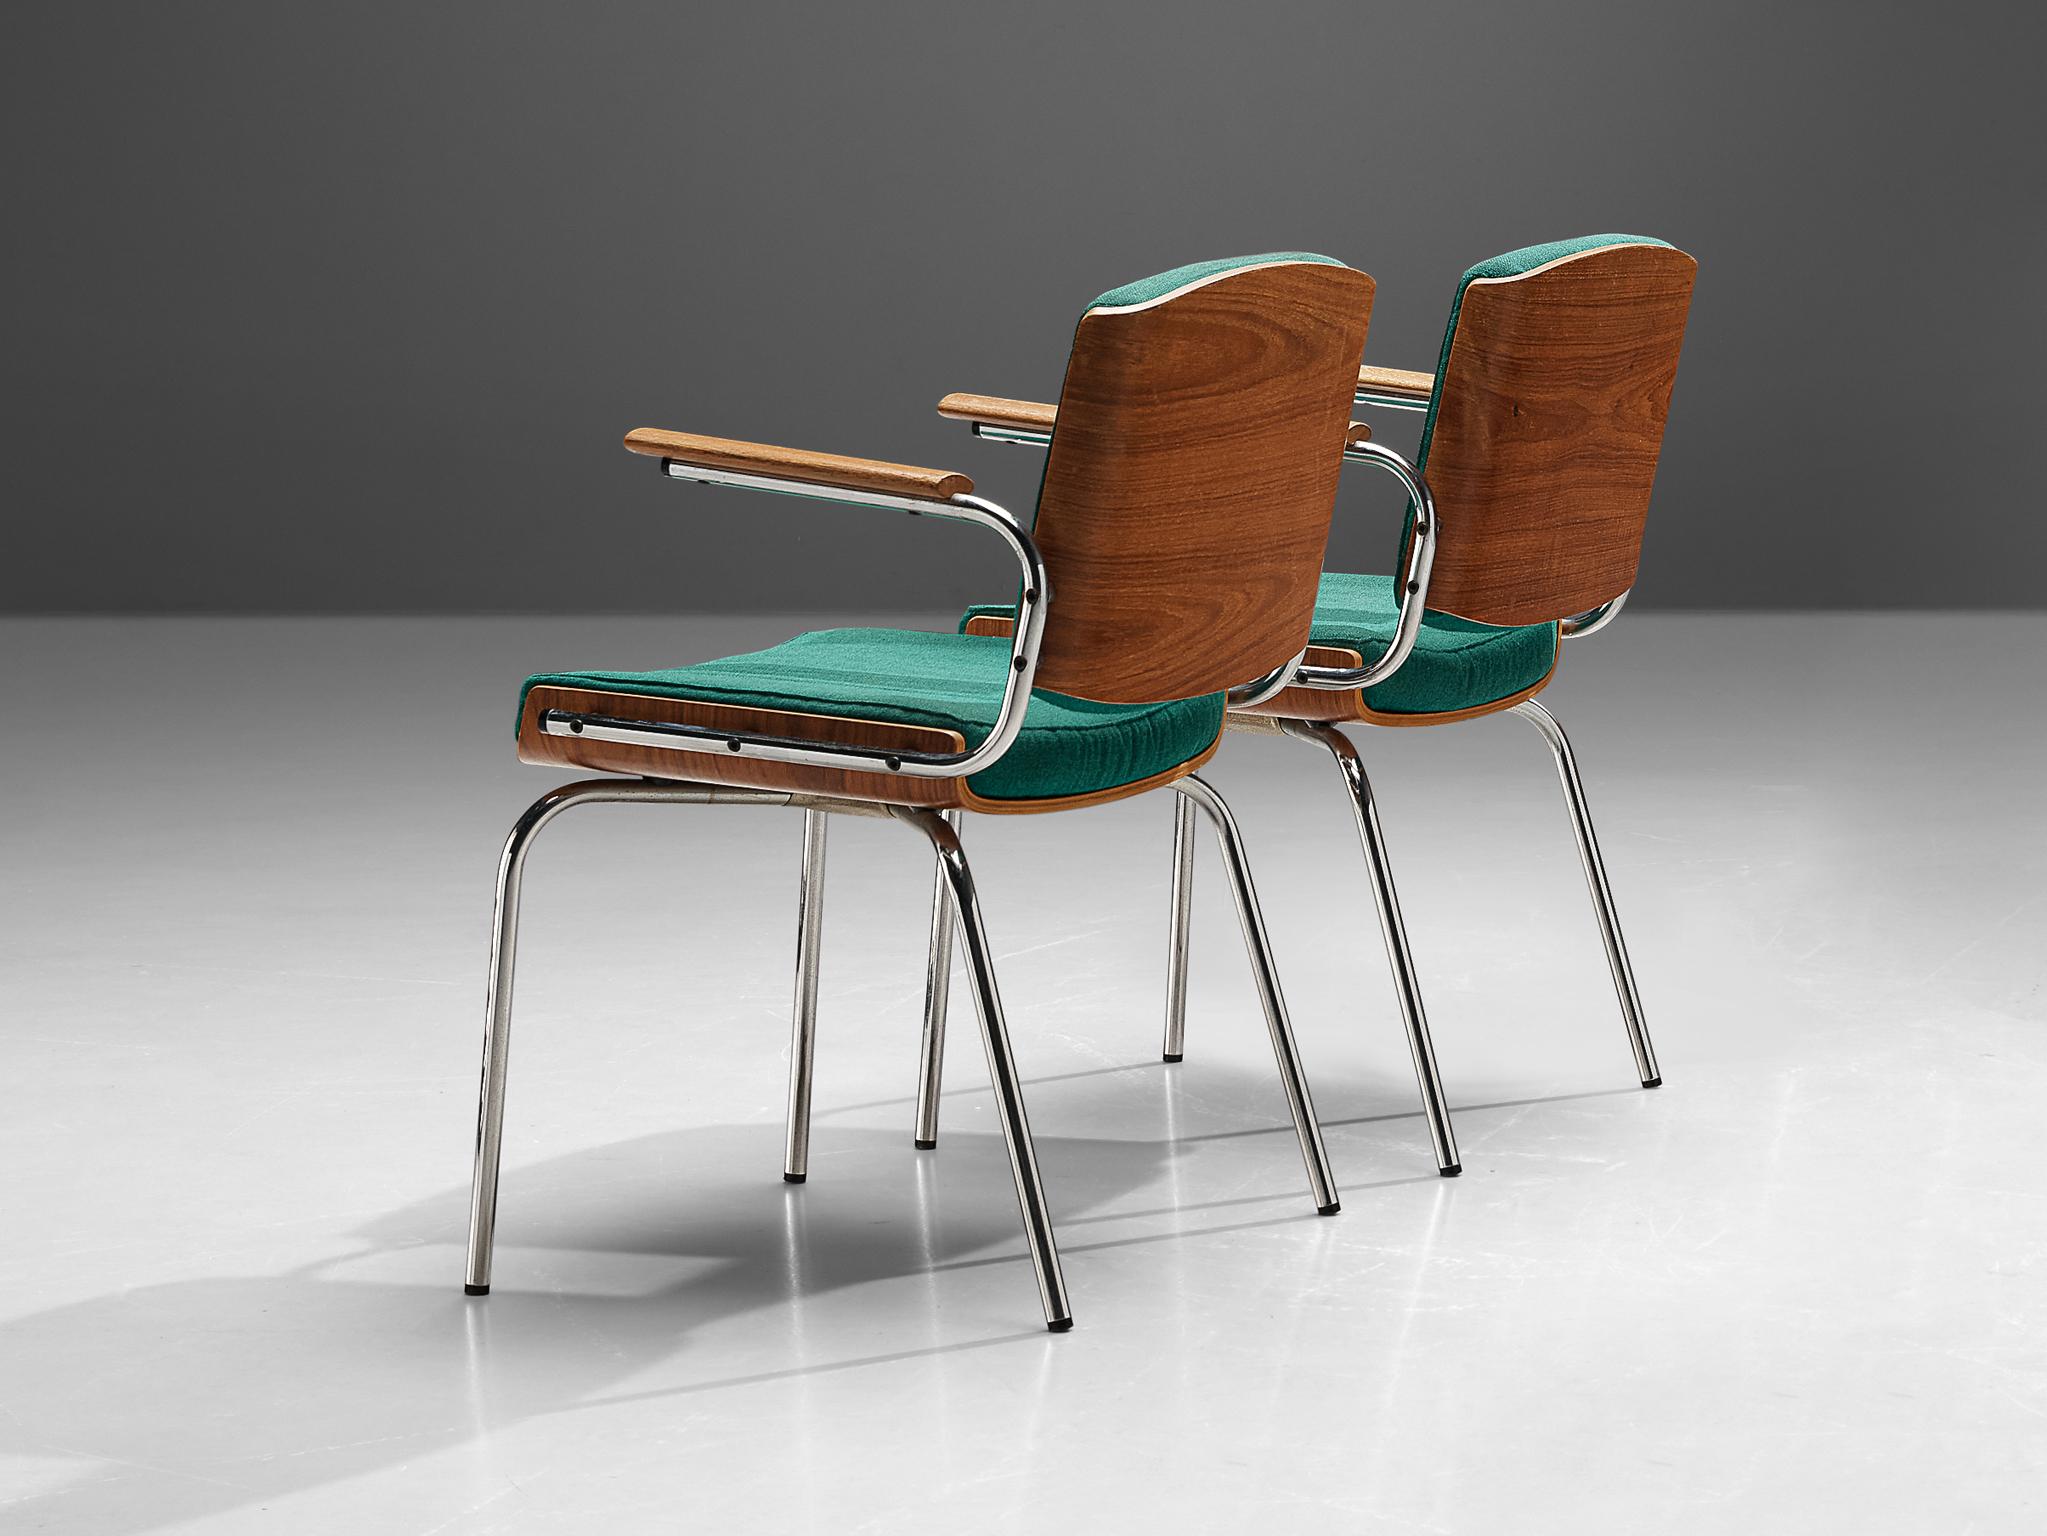 Duba, paire de chaises de salle à manger, contreplaqué de teck, tissu, acier chromé, Danemark, 1970

Paire de chaises danoises fabriquées par Duba. Le design présente une combinaison frappante de matériaux et de textures. Le dossier et le cadre de